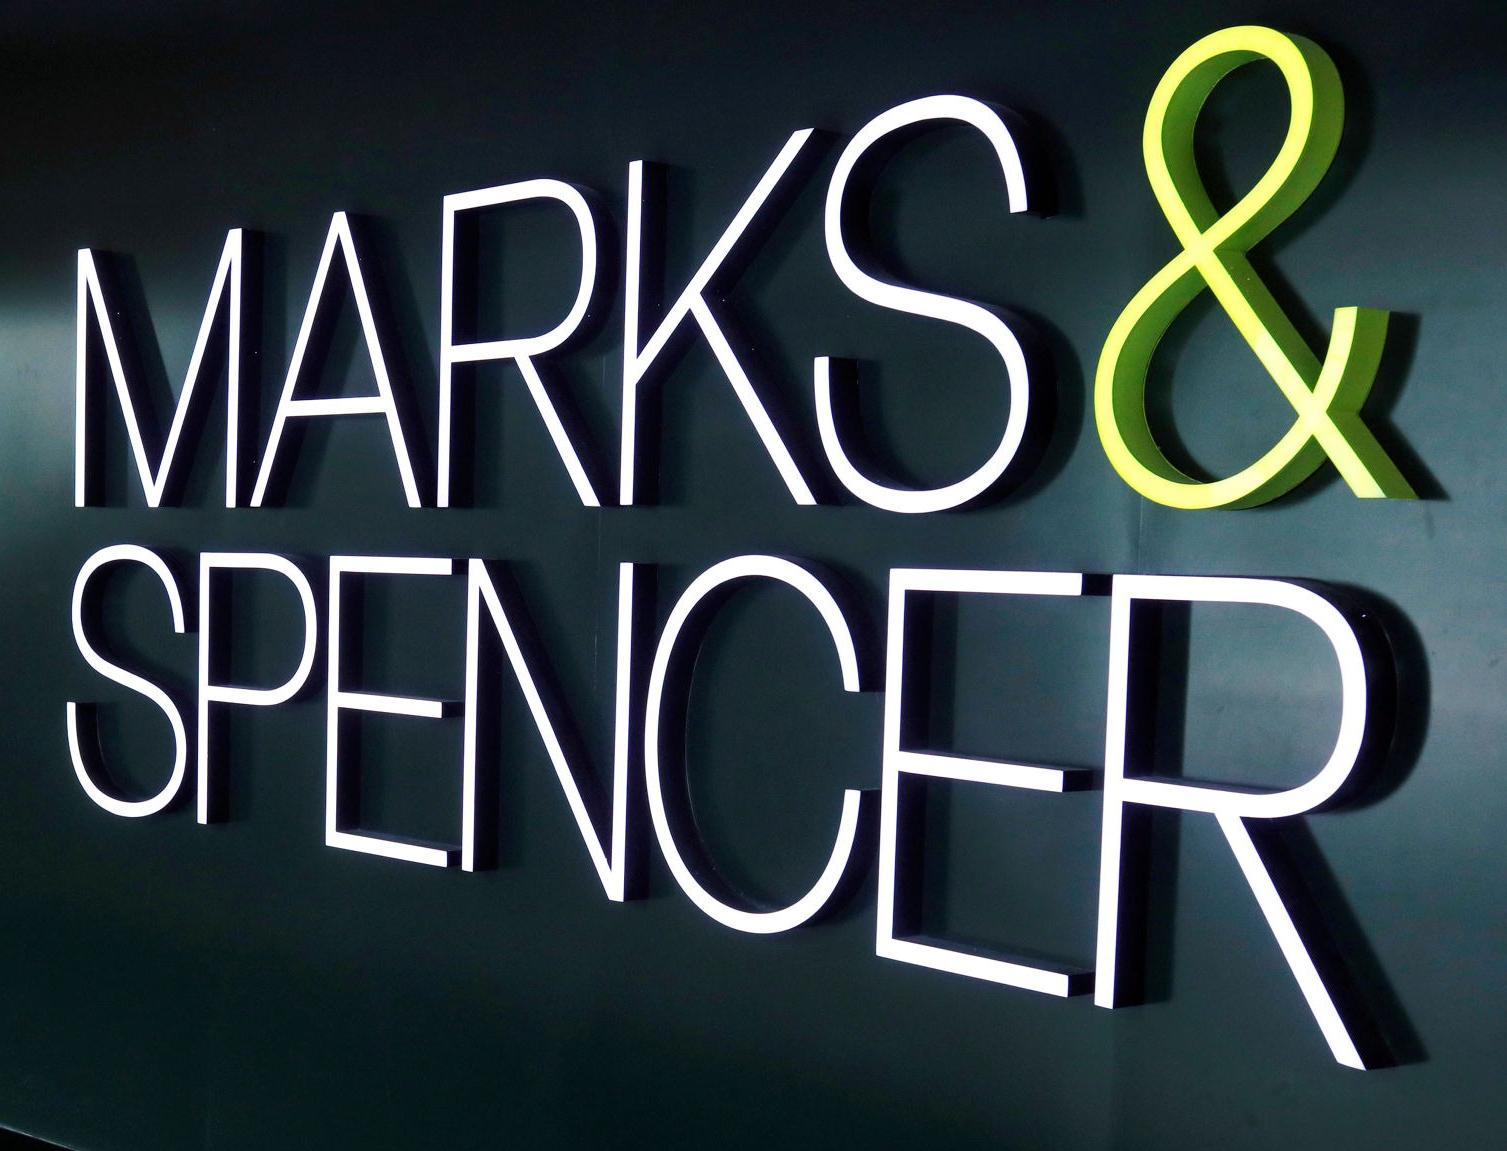 Marks&Spencer предложил отказаться от покупки одежды в пользу экологичной аренды